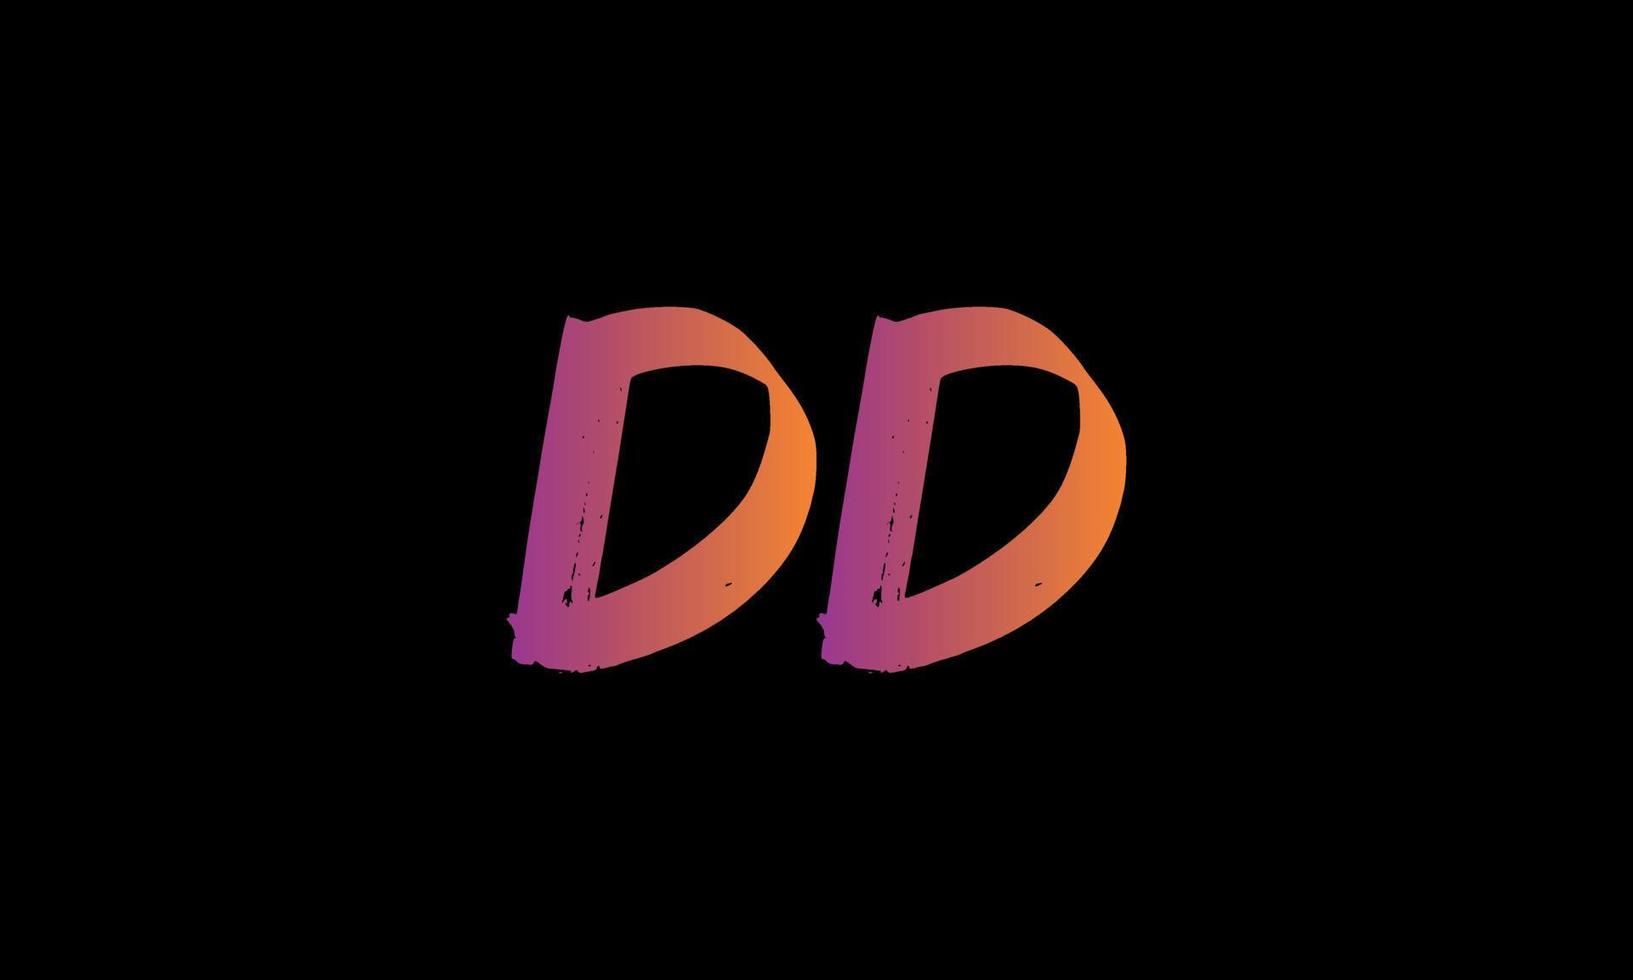 Initial Letter DD Logo. DD Brush Stock Letter Logo design Free vector template.